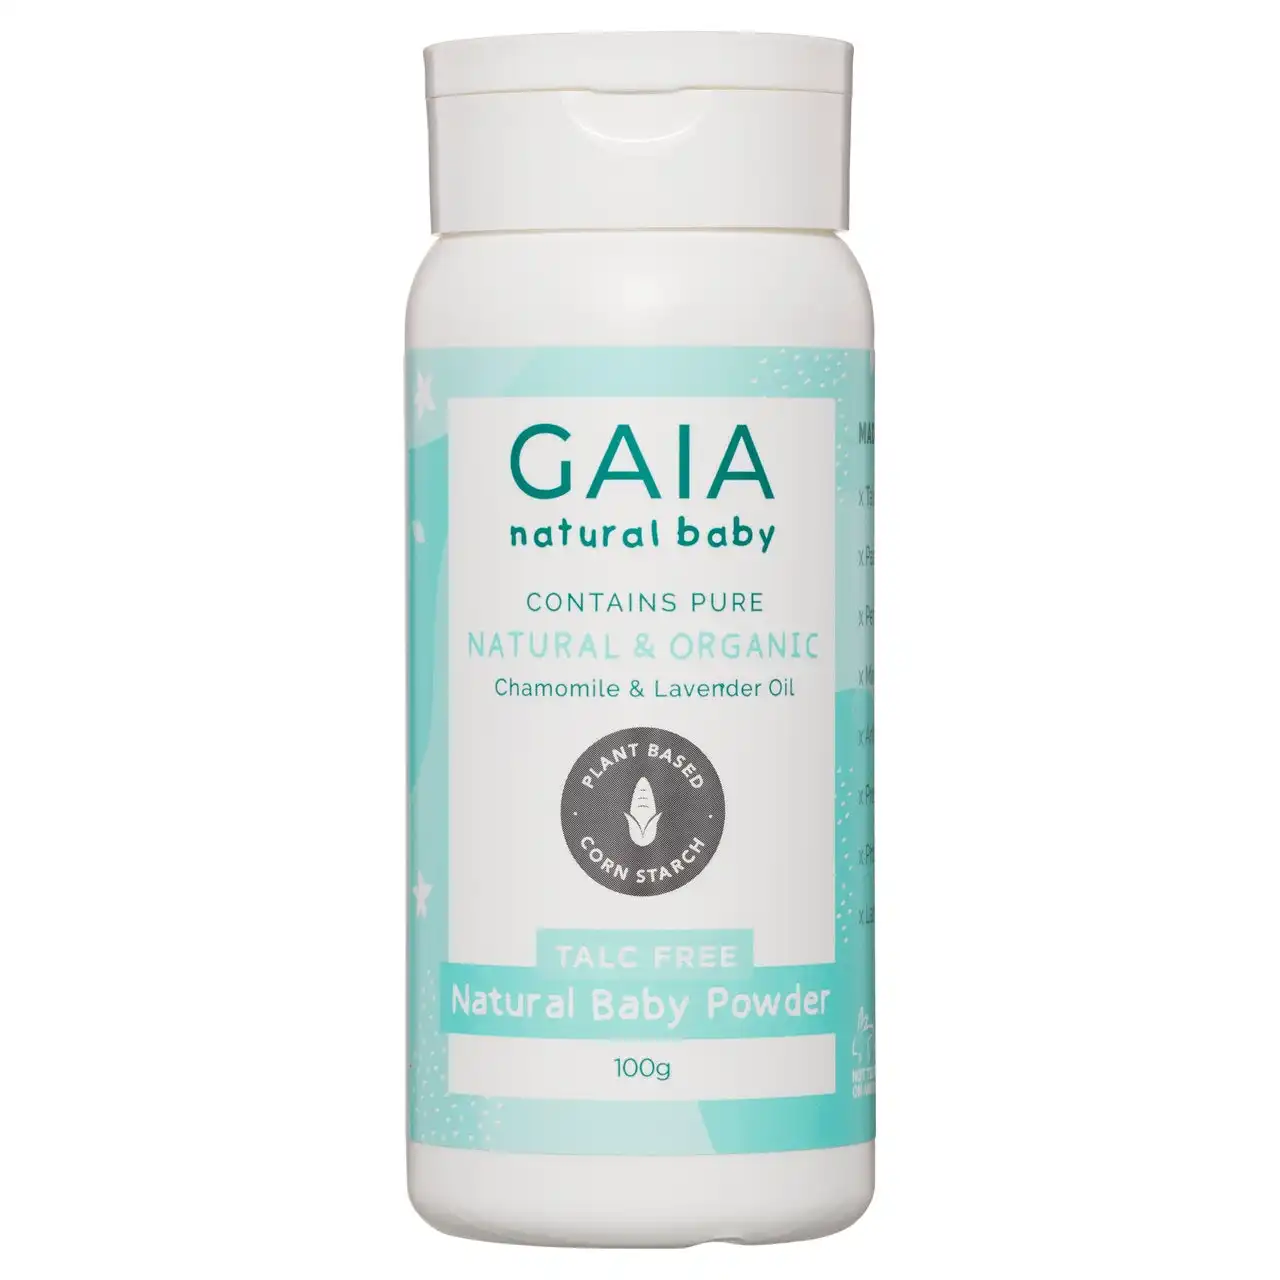 Gaia Talc Free Natural Baby Powder 100g